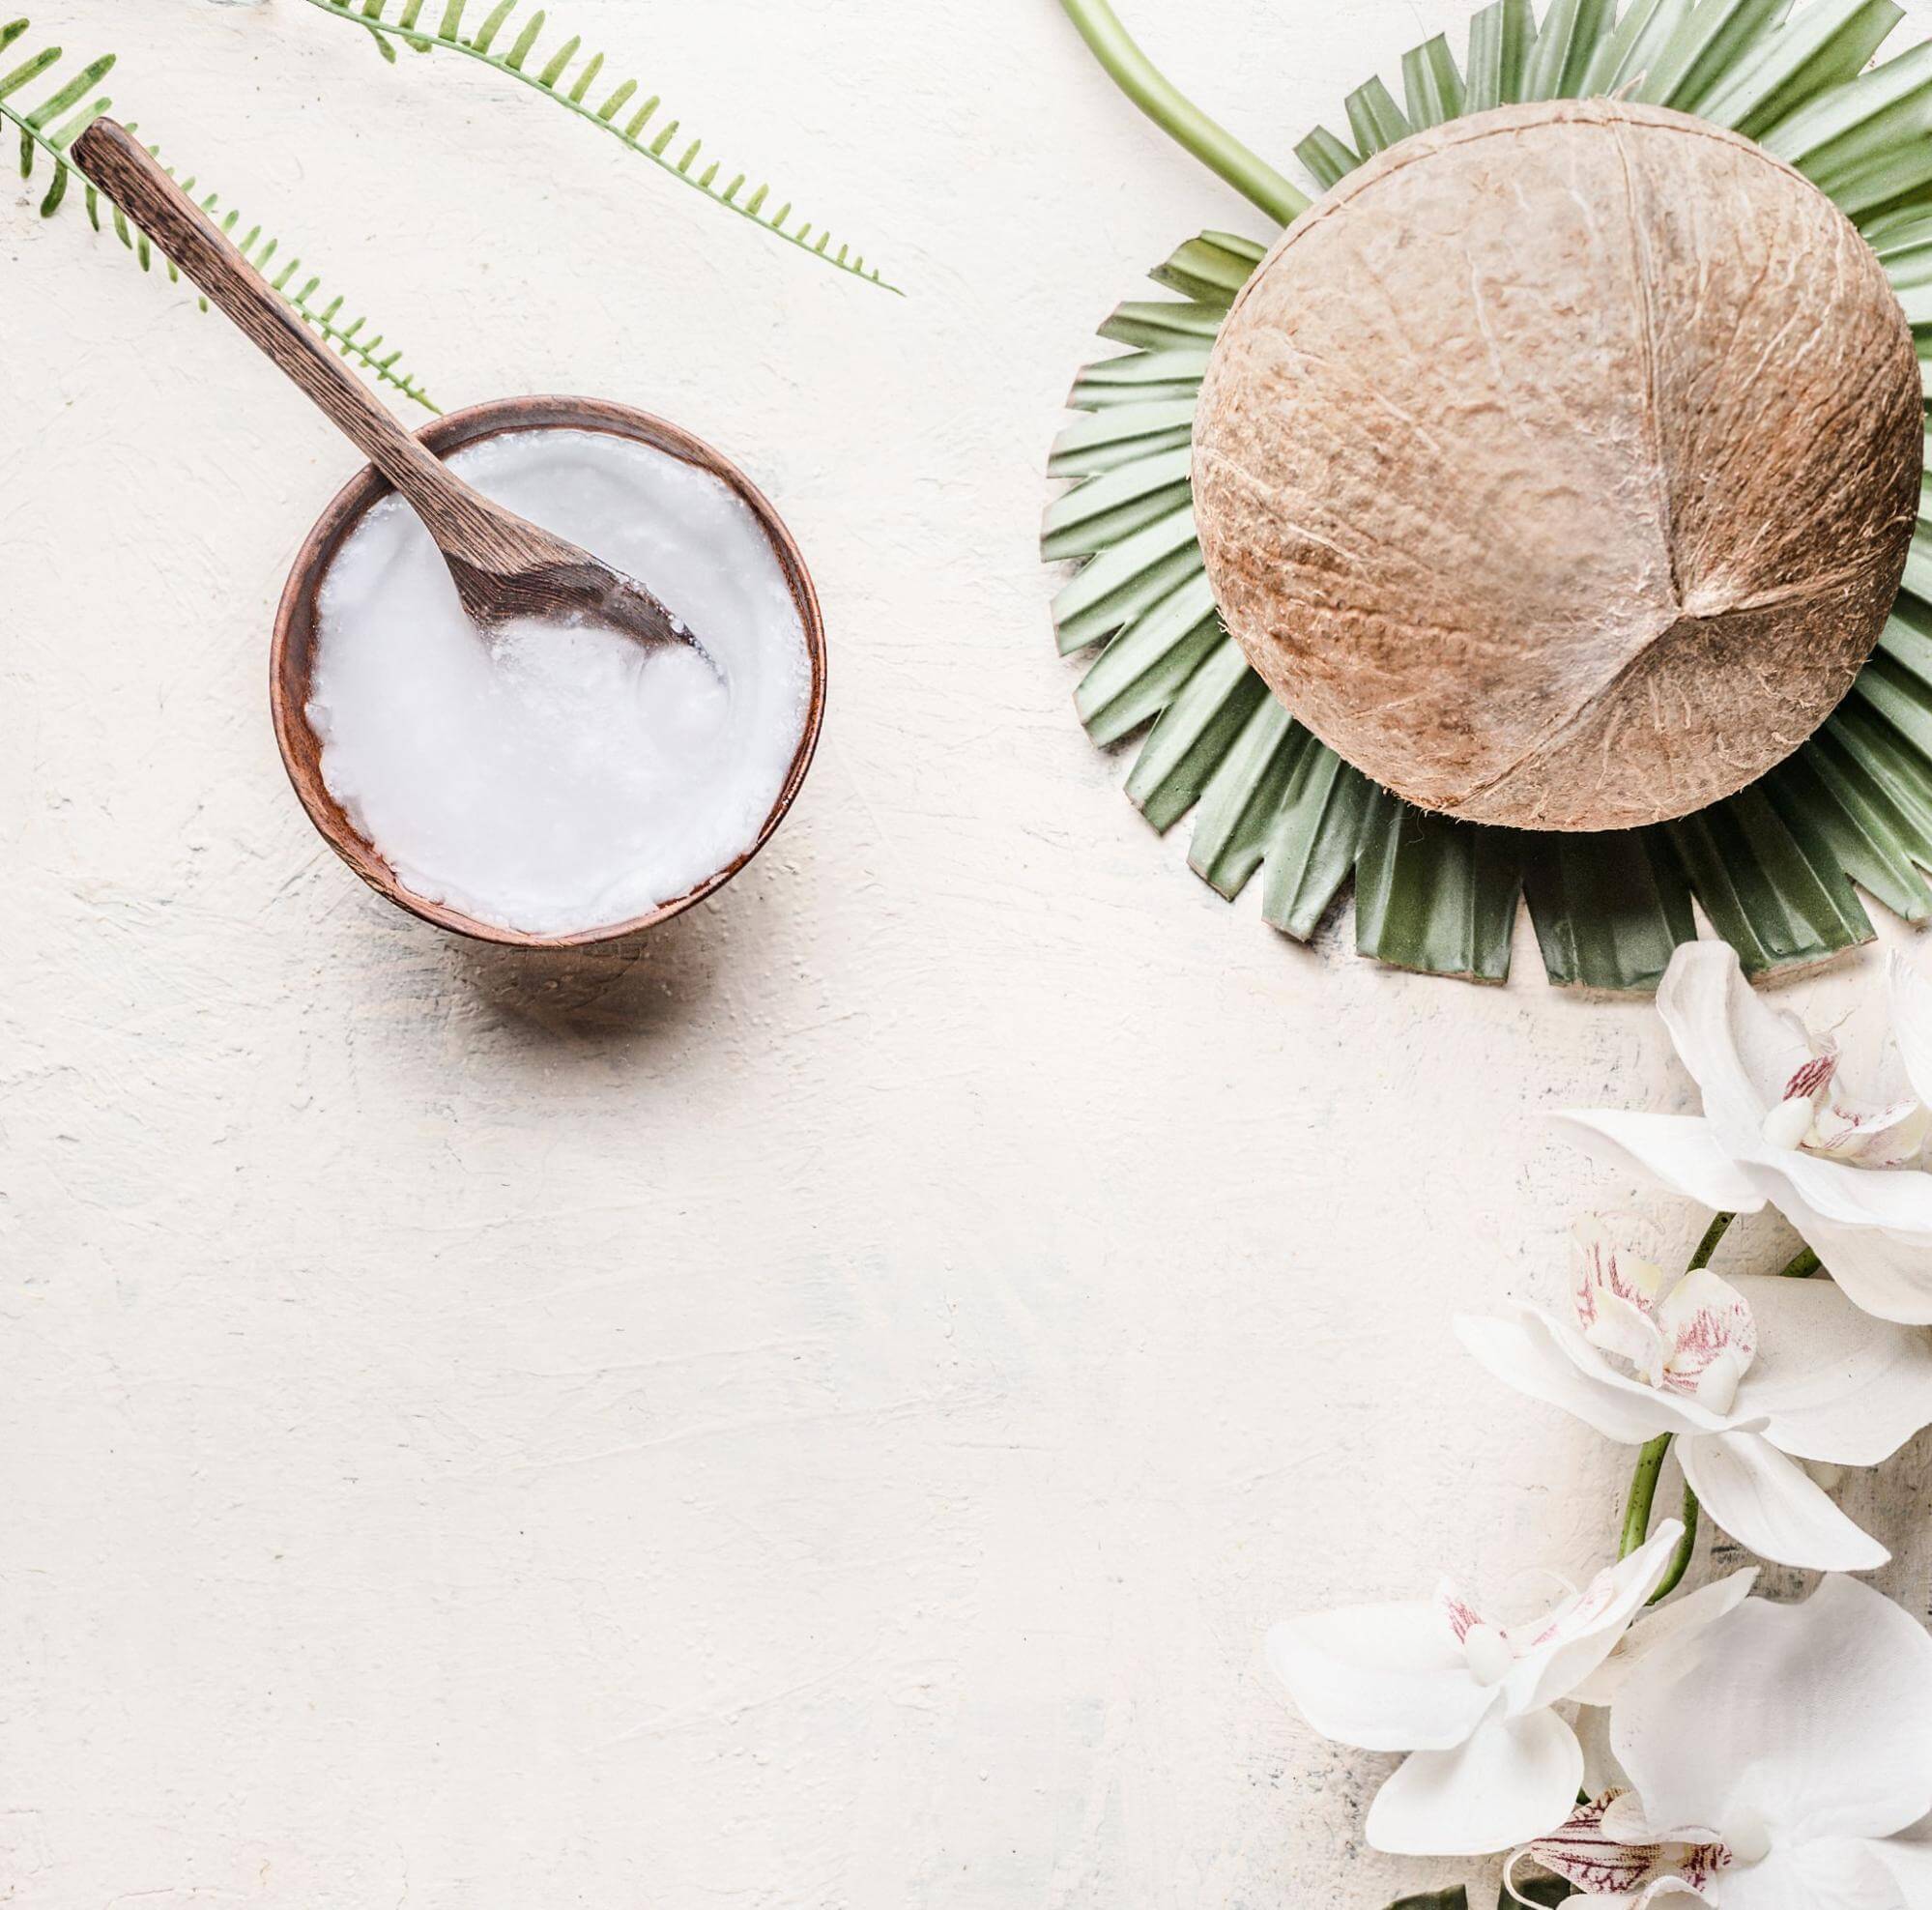 coconut oil as deodorant substitute